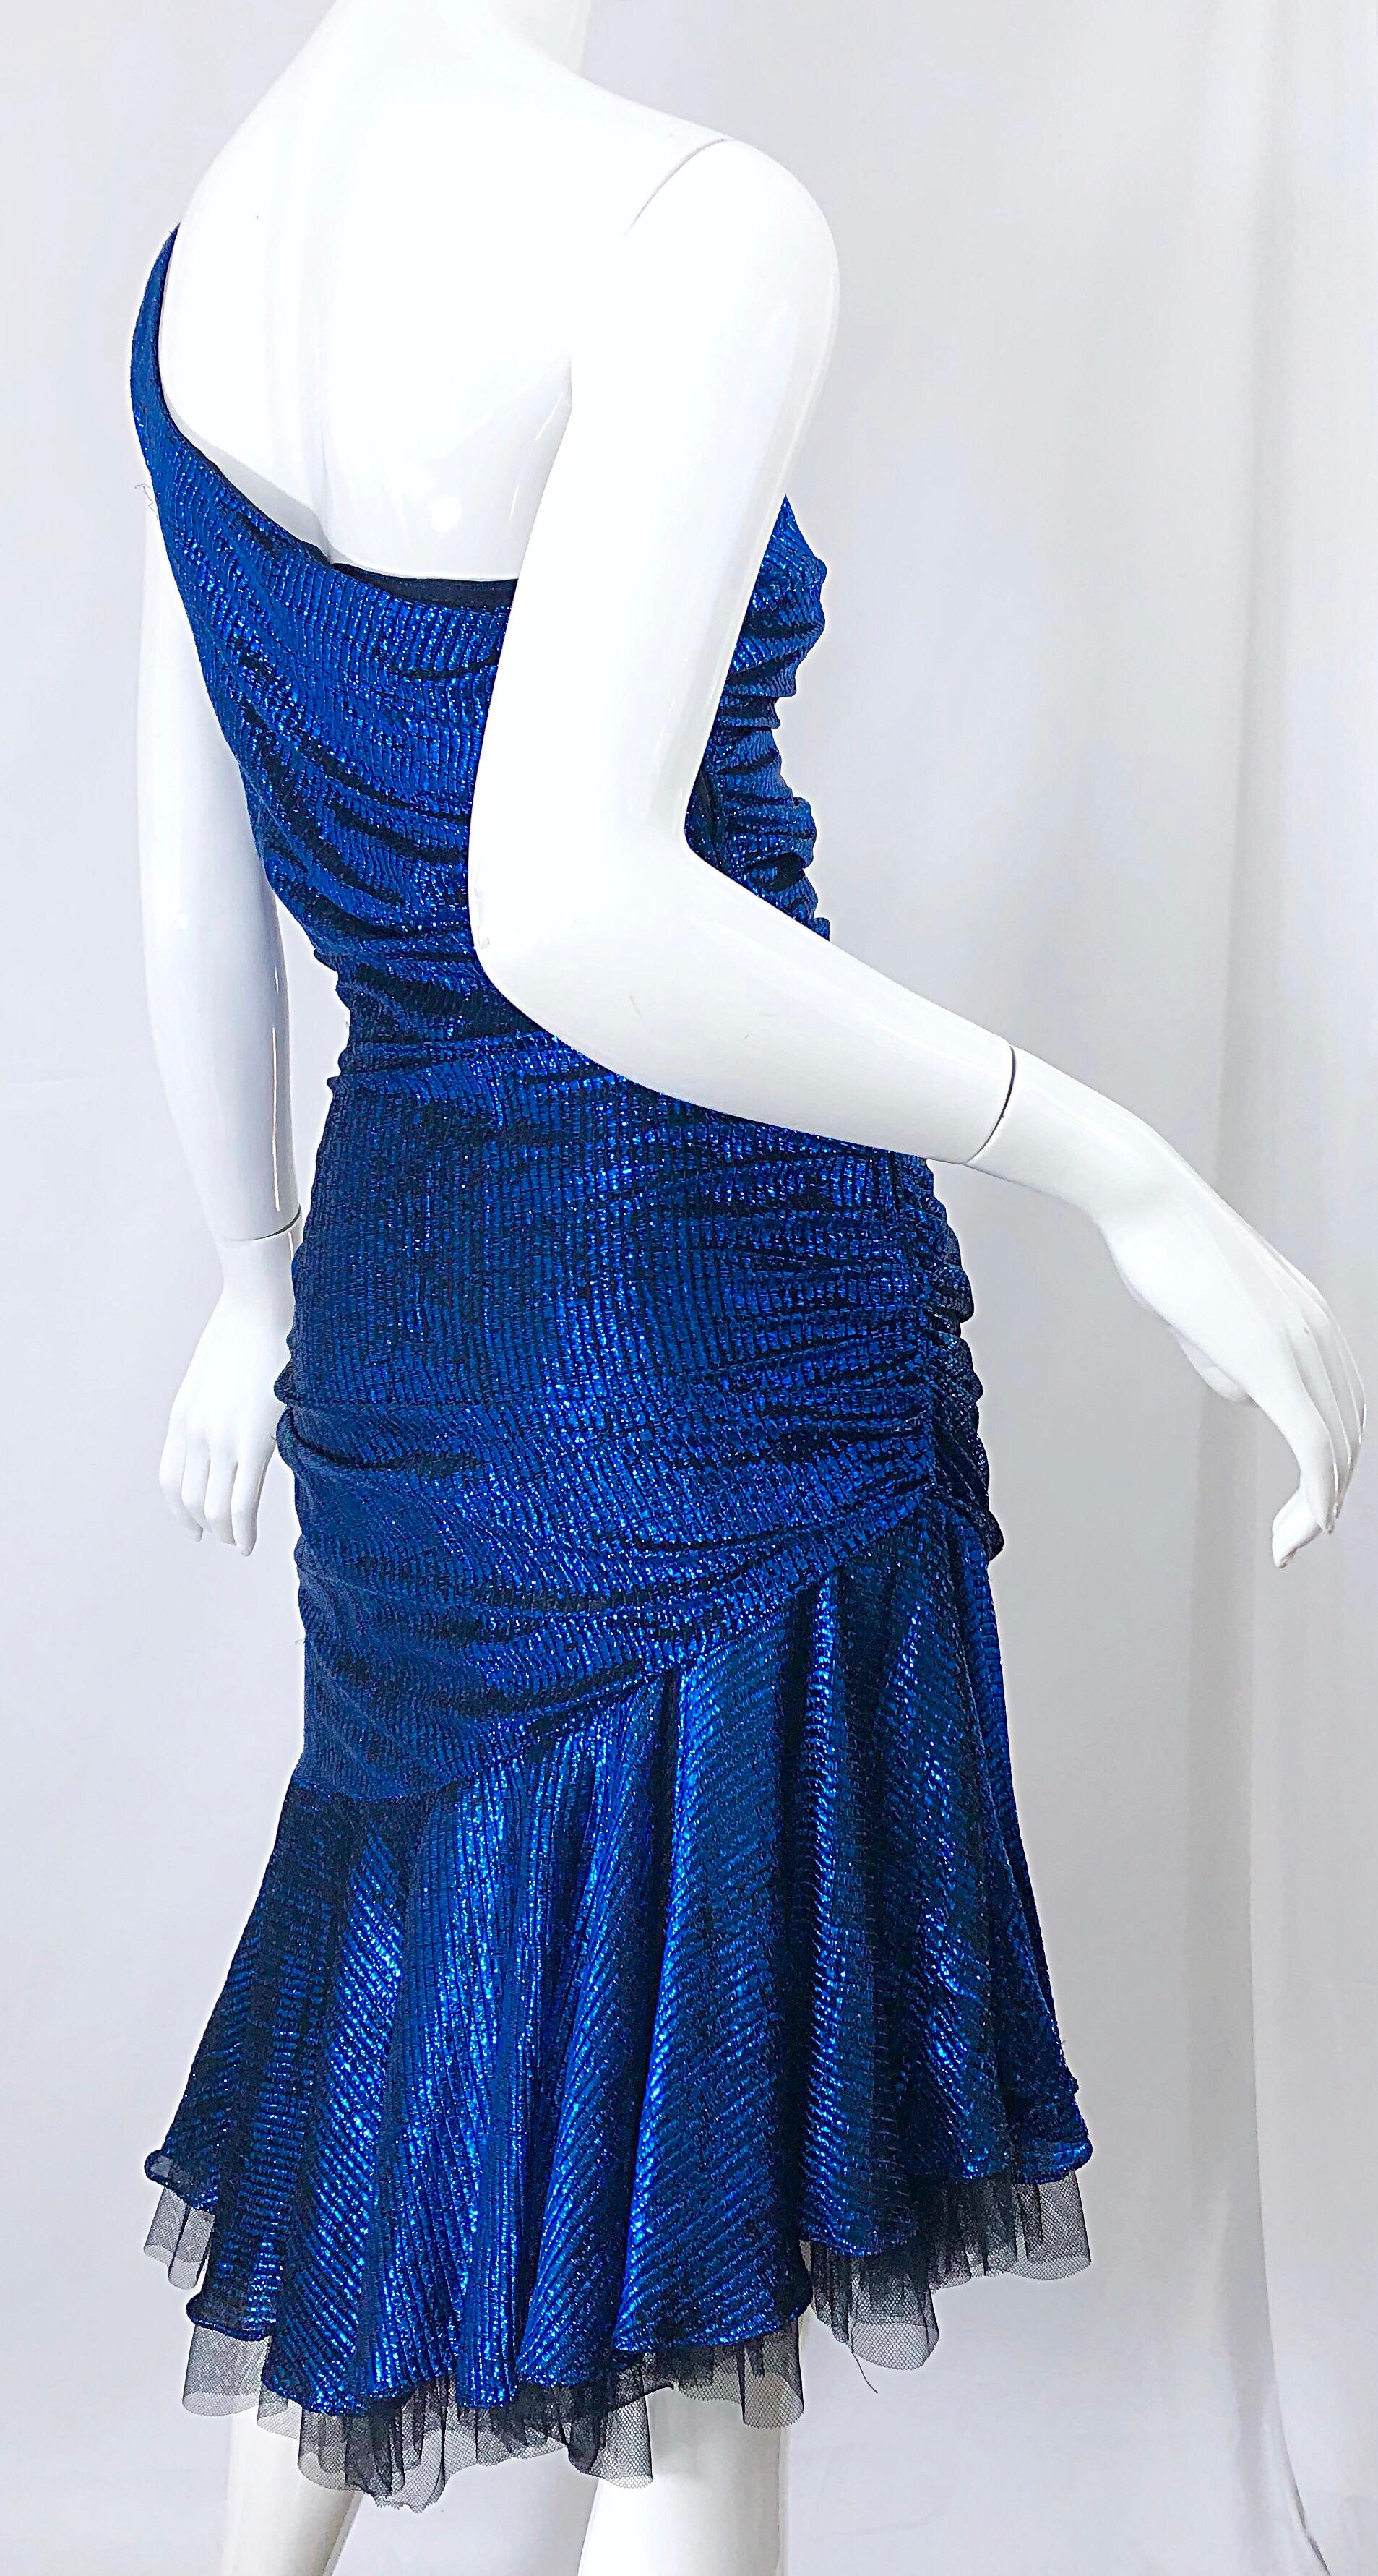 1980s Electric Blue + Black One Shoulder Metallic One Shoulder Vintage 80s Dress 1